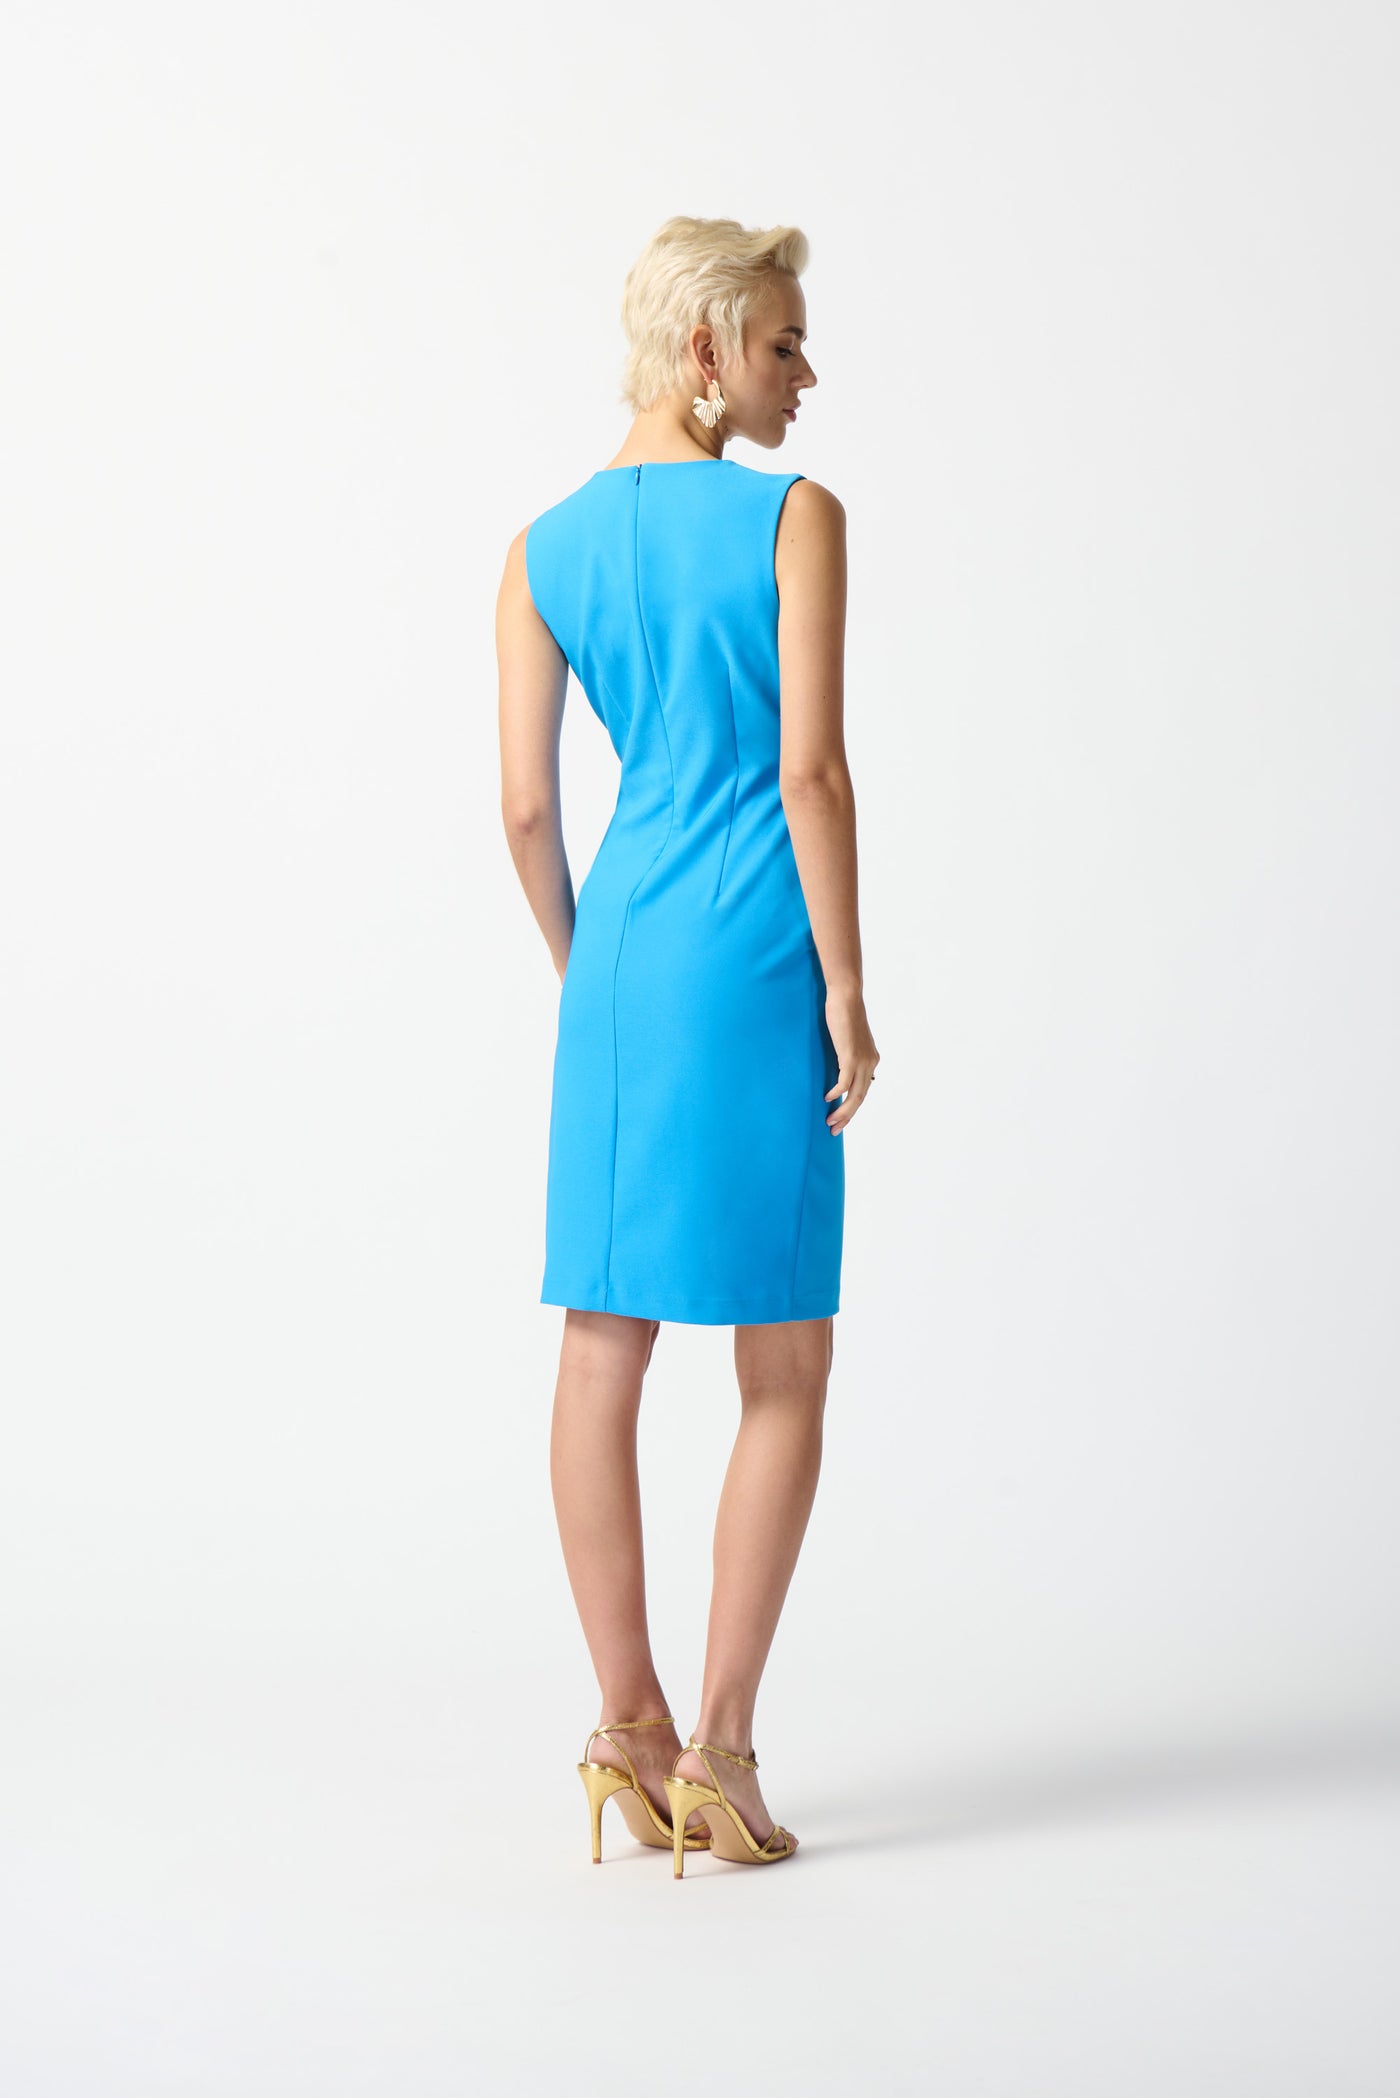 Casablanca Lux Twill Sheath Dress - French Blue Dress 242151